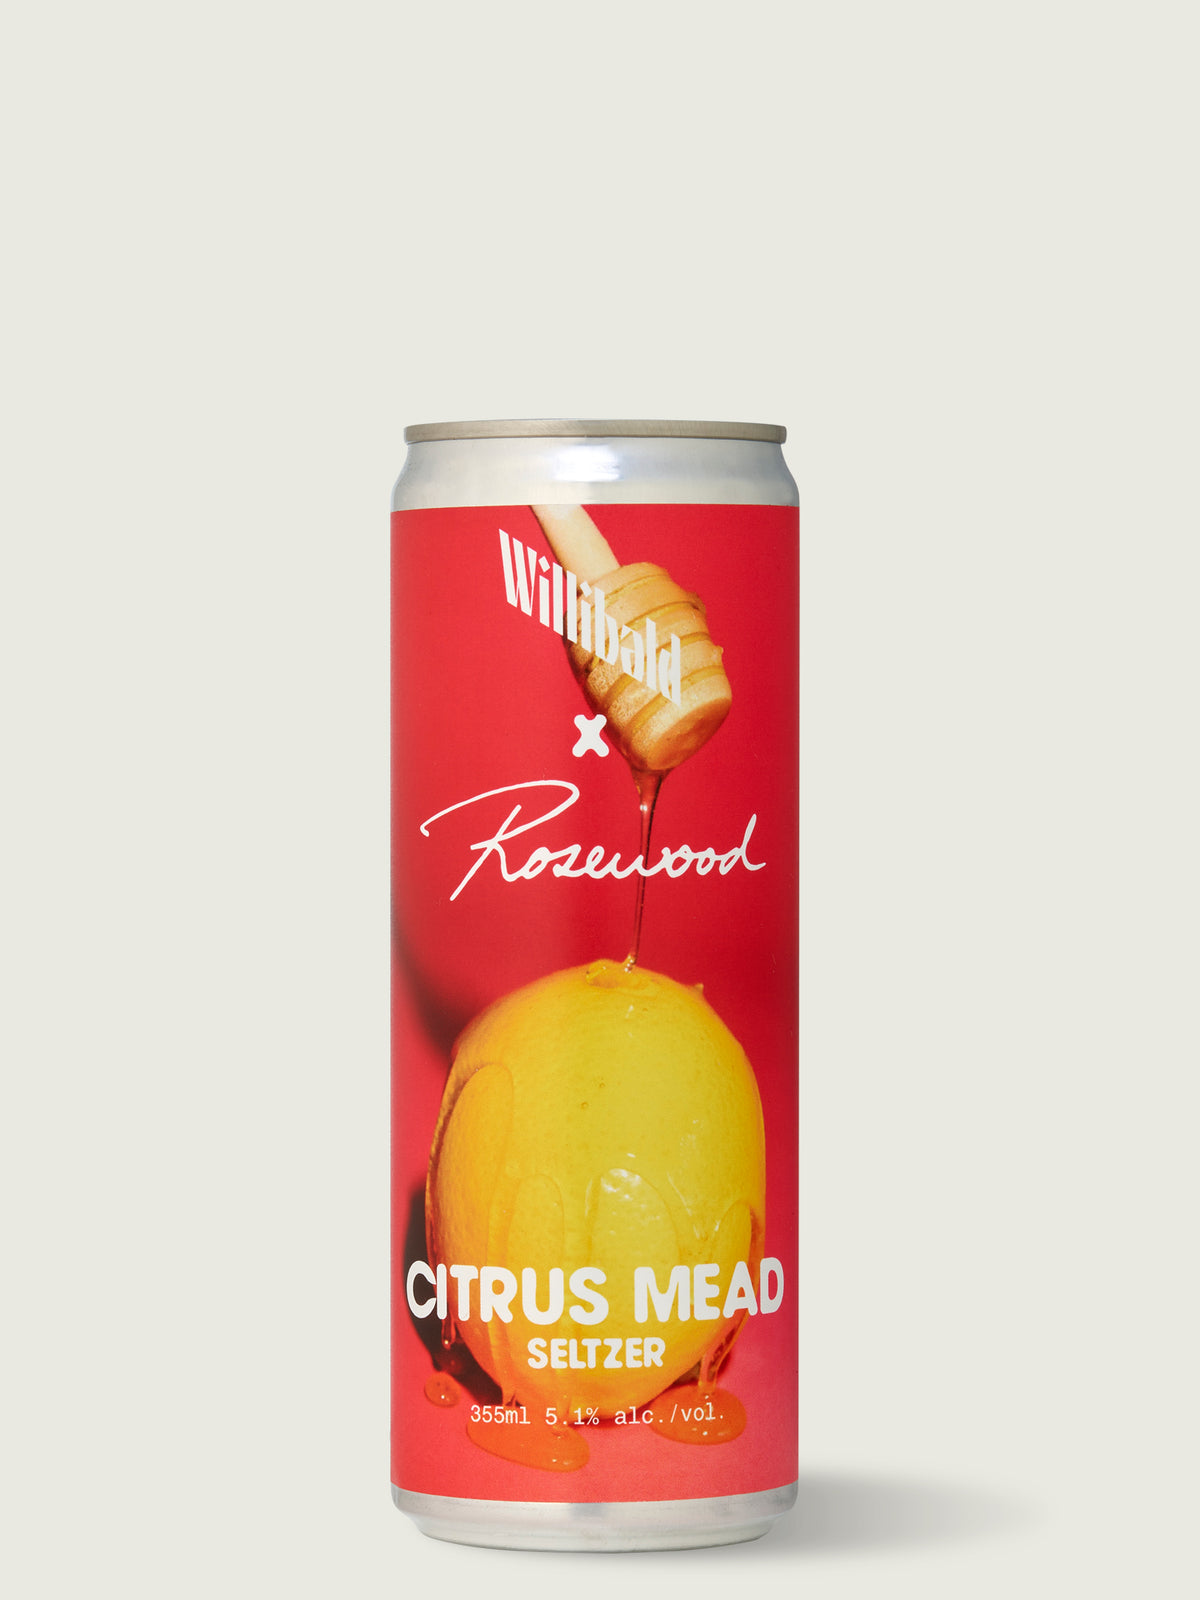 Citrus Mead Seltzer